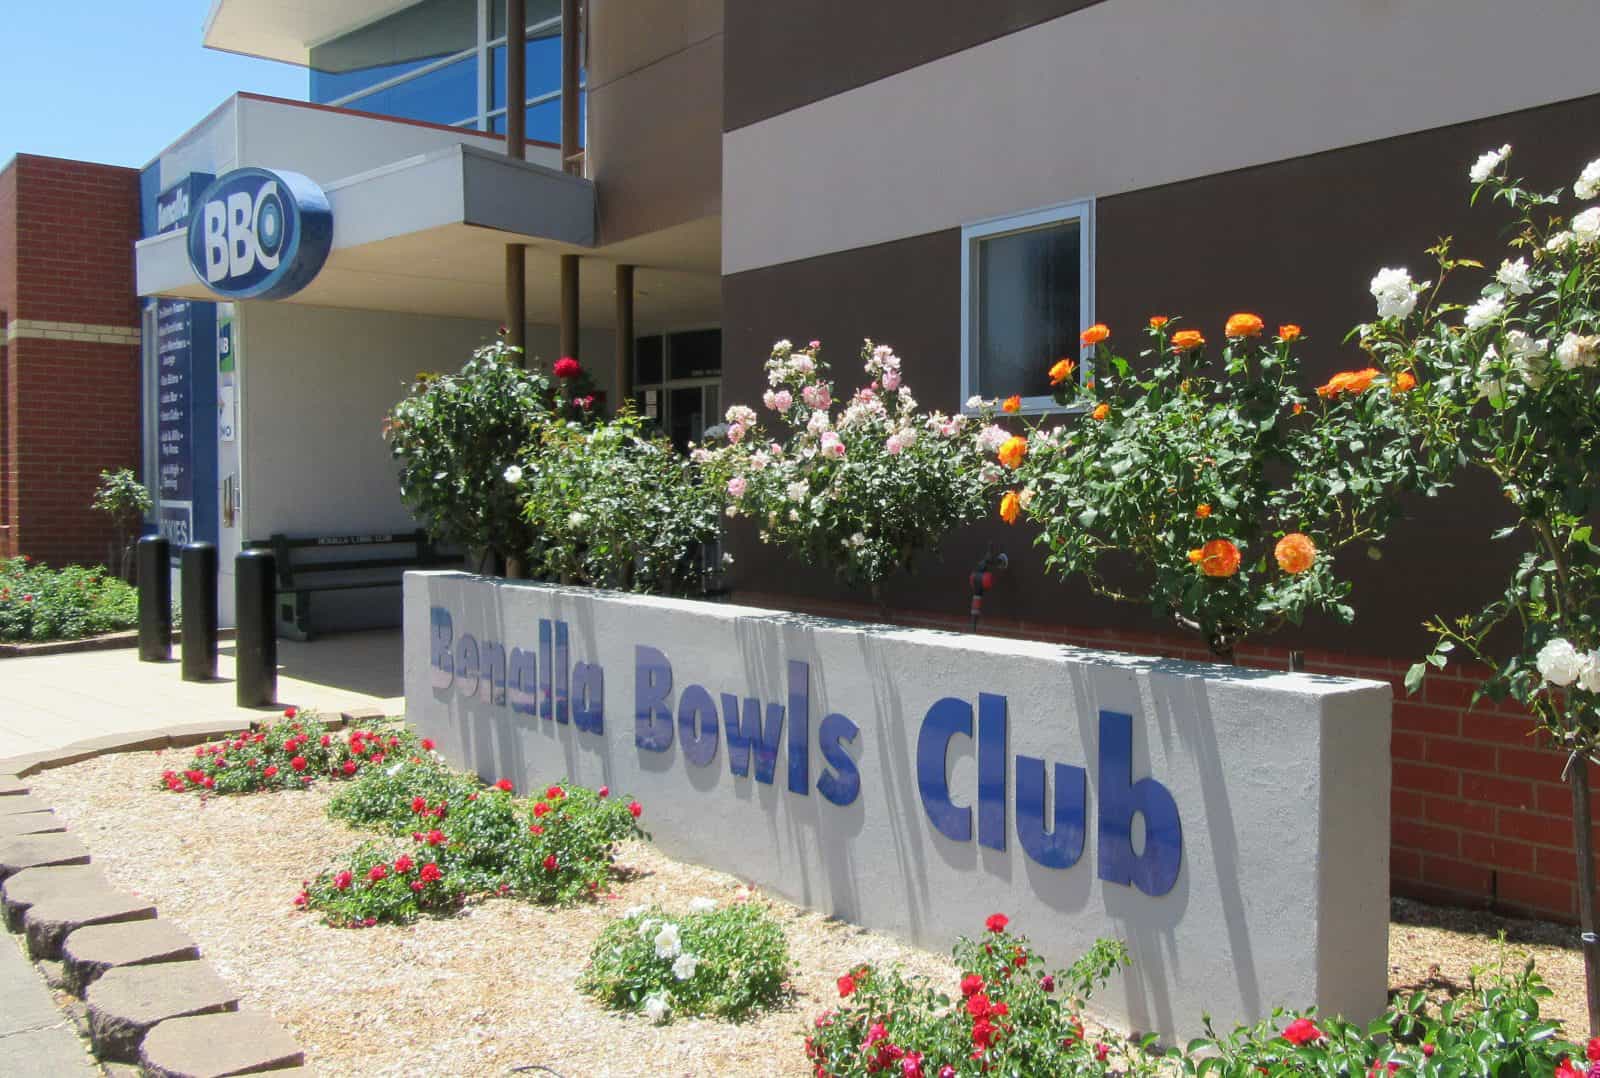 Benalla Bowls Club